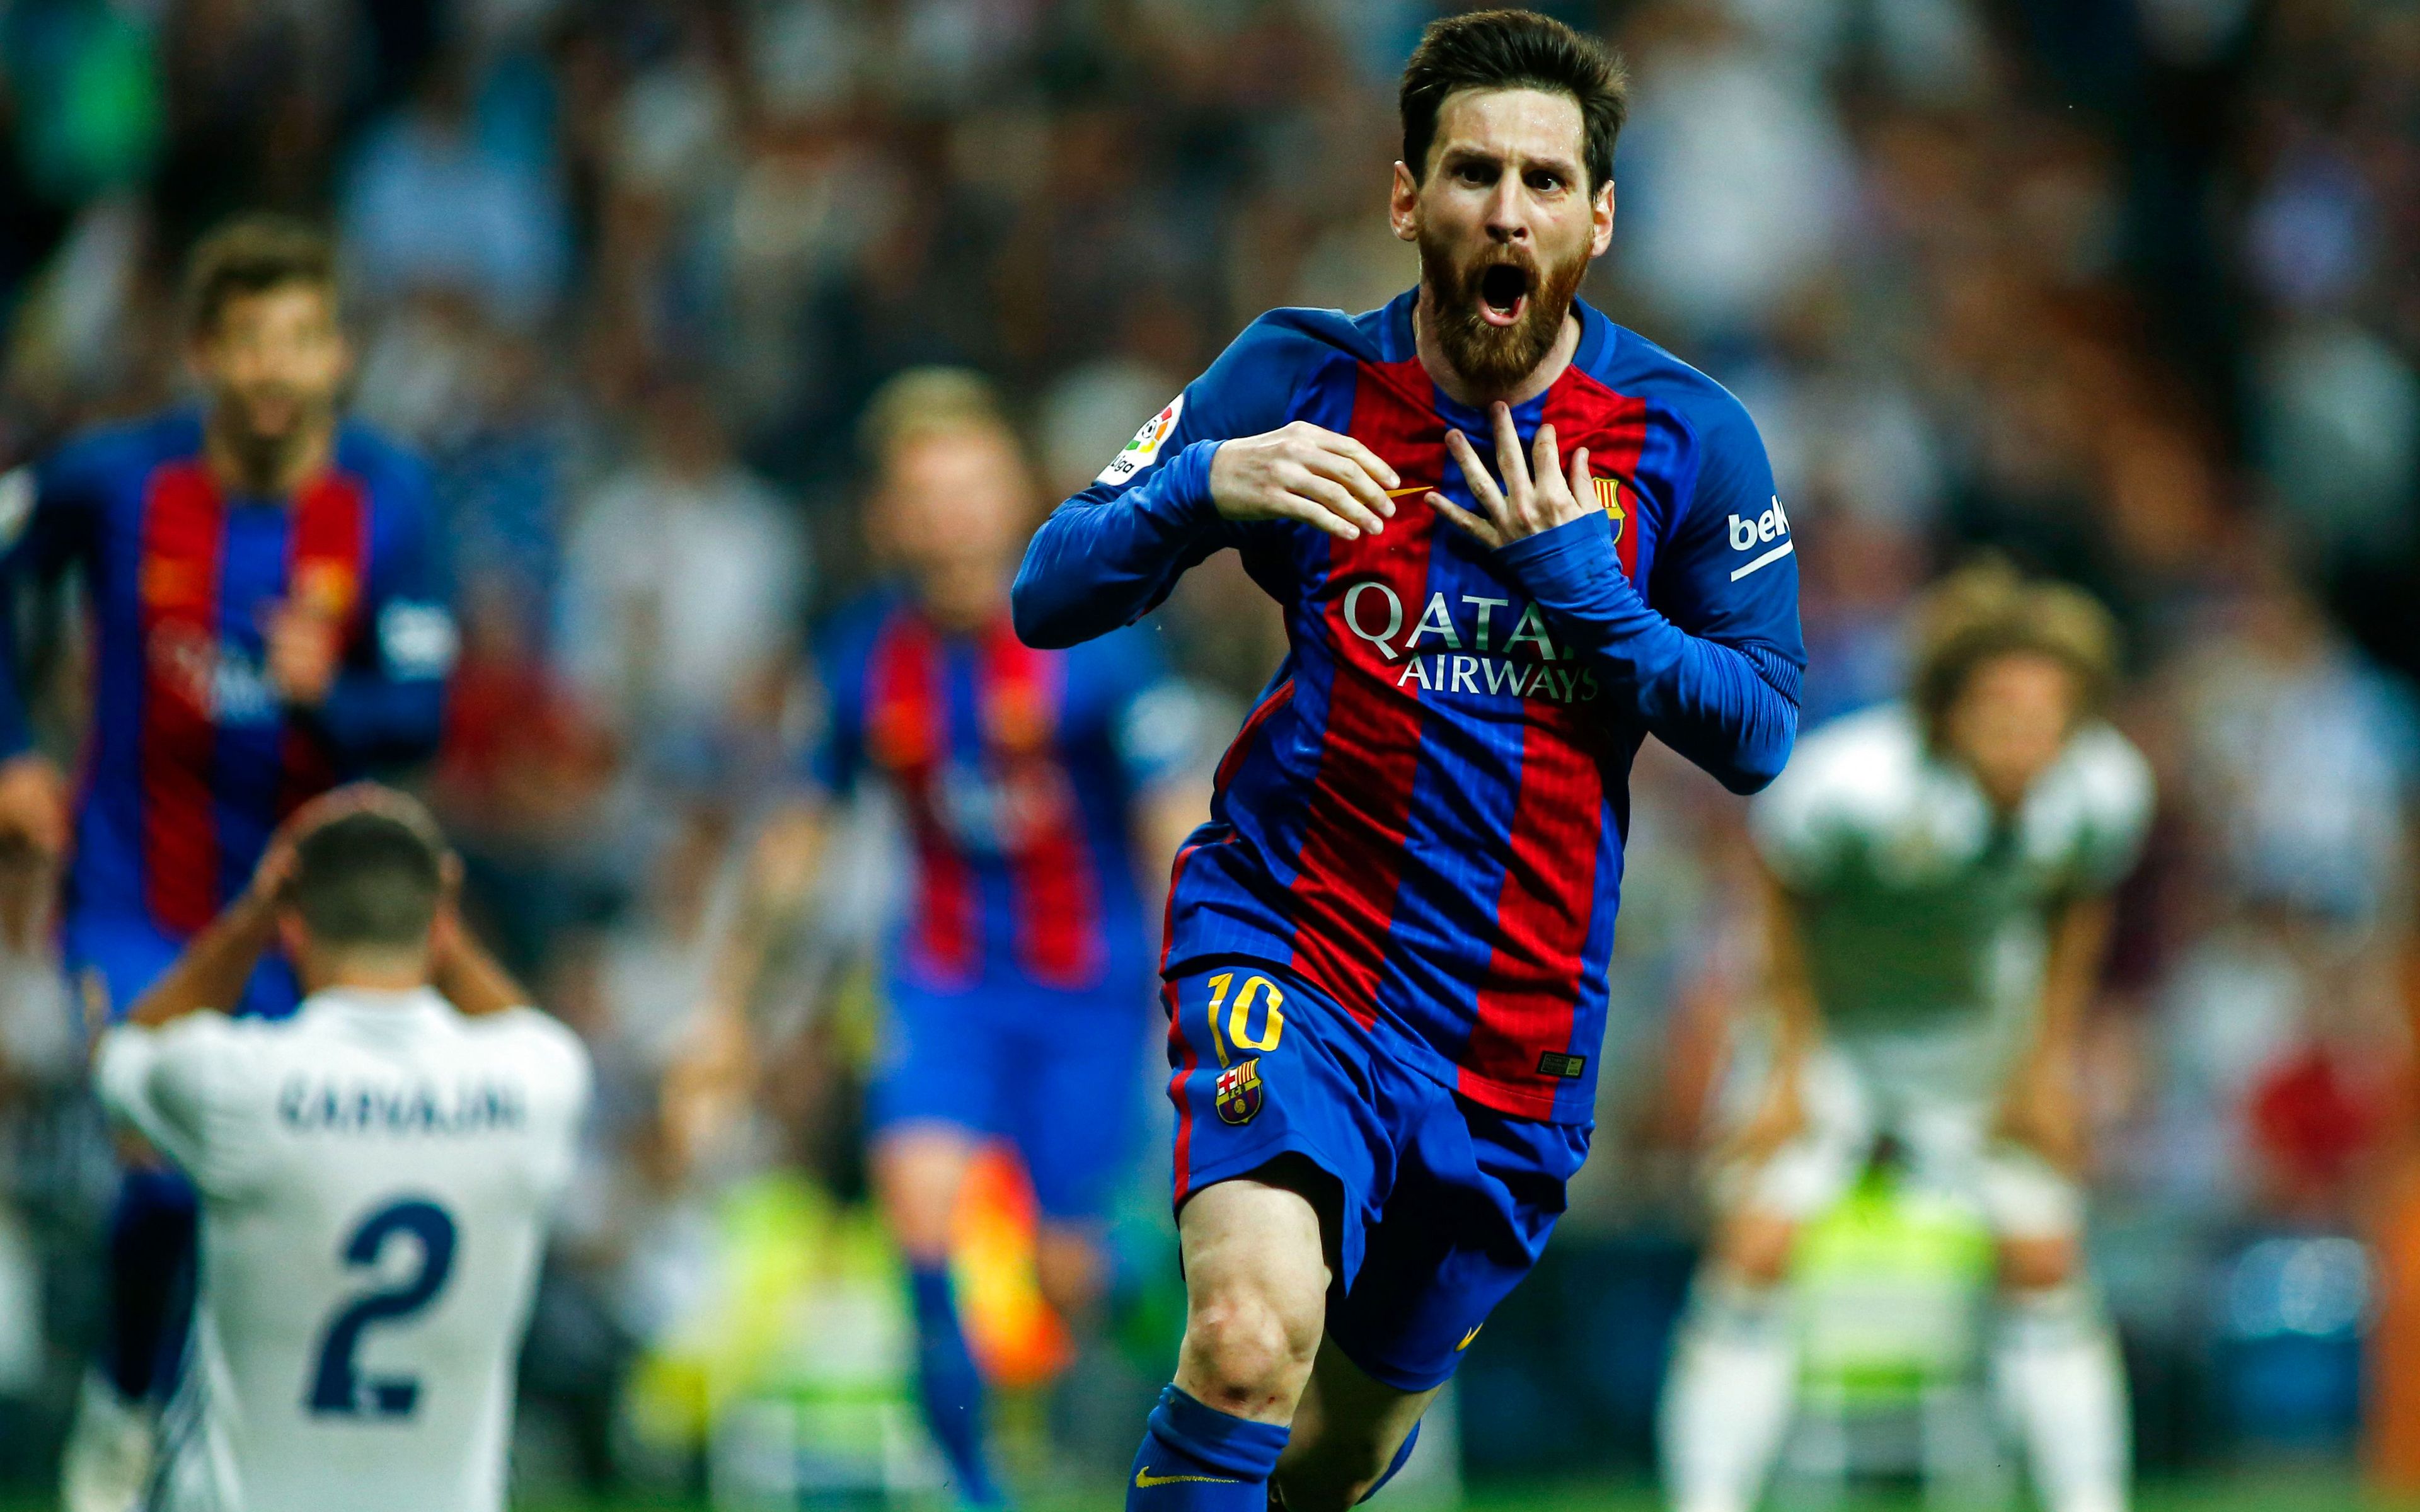 Chào mừng bạn đến với bộ sưu tập hình nền Messi! Những tấm ảnh này đã được chọn lọc kỉ càng và làm nổi bật tài năng của cầu thủ huyền thoại này. Hãy nhanh tay tải về để có thể ngắm nhìn khả năng xuất sắc của anh ta trong từng trận đấu.